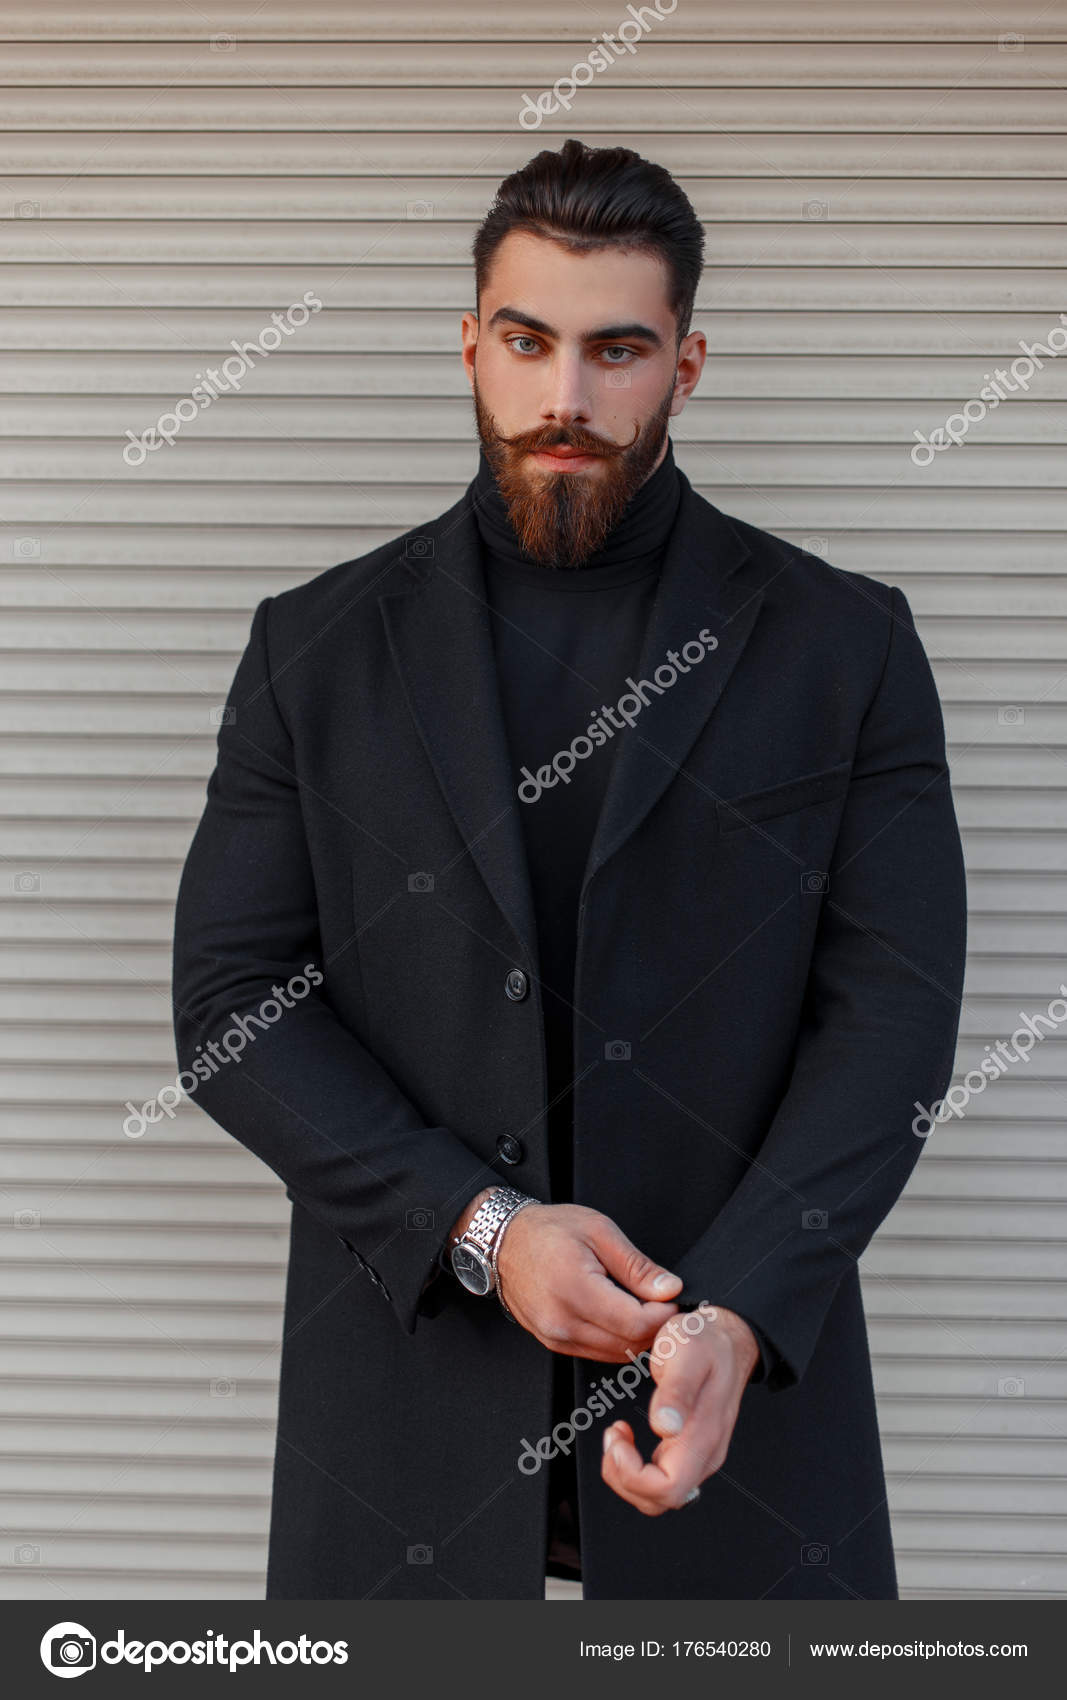 Detektiv Uregelmæssigheder lindre Stilfuld ung mand med frisure og skæg i en trendy sort frakke poserende nær  en metalvæg — Stock-foto © alonesdj #176540280